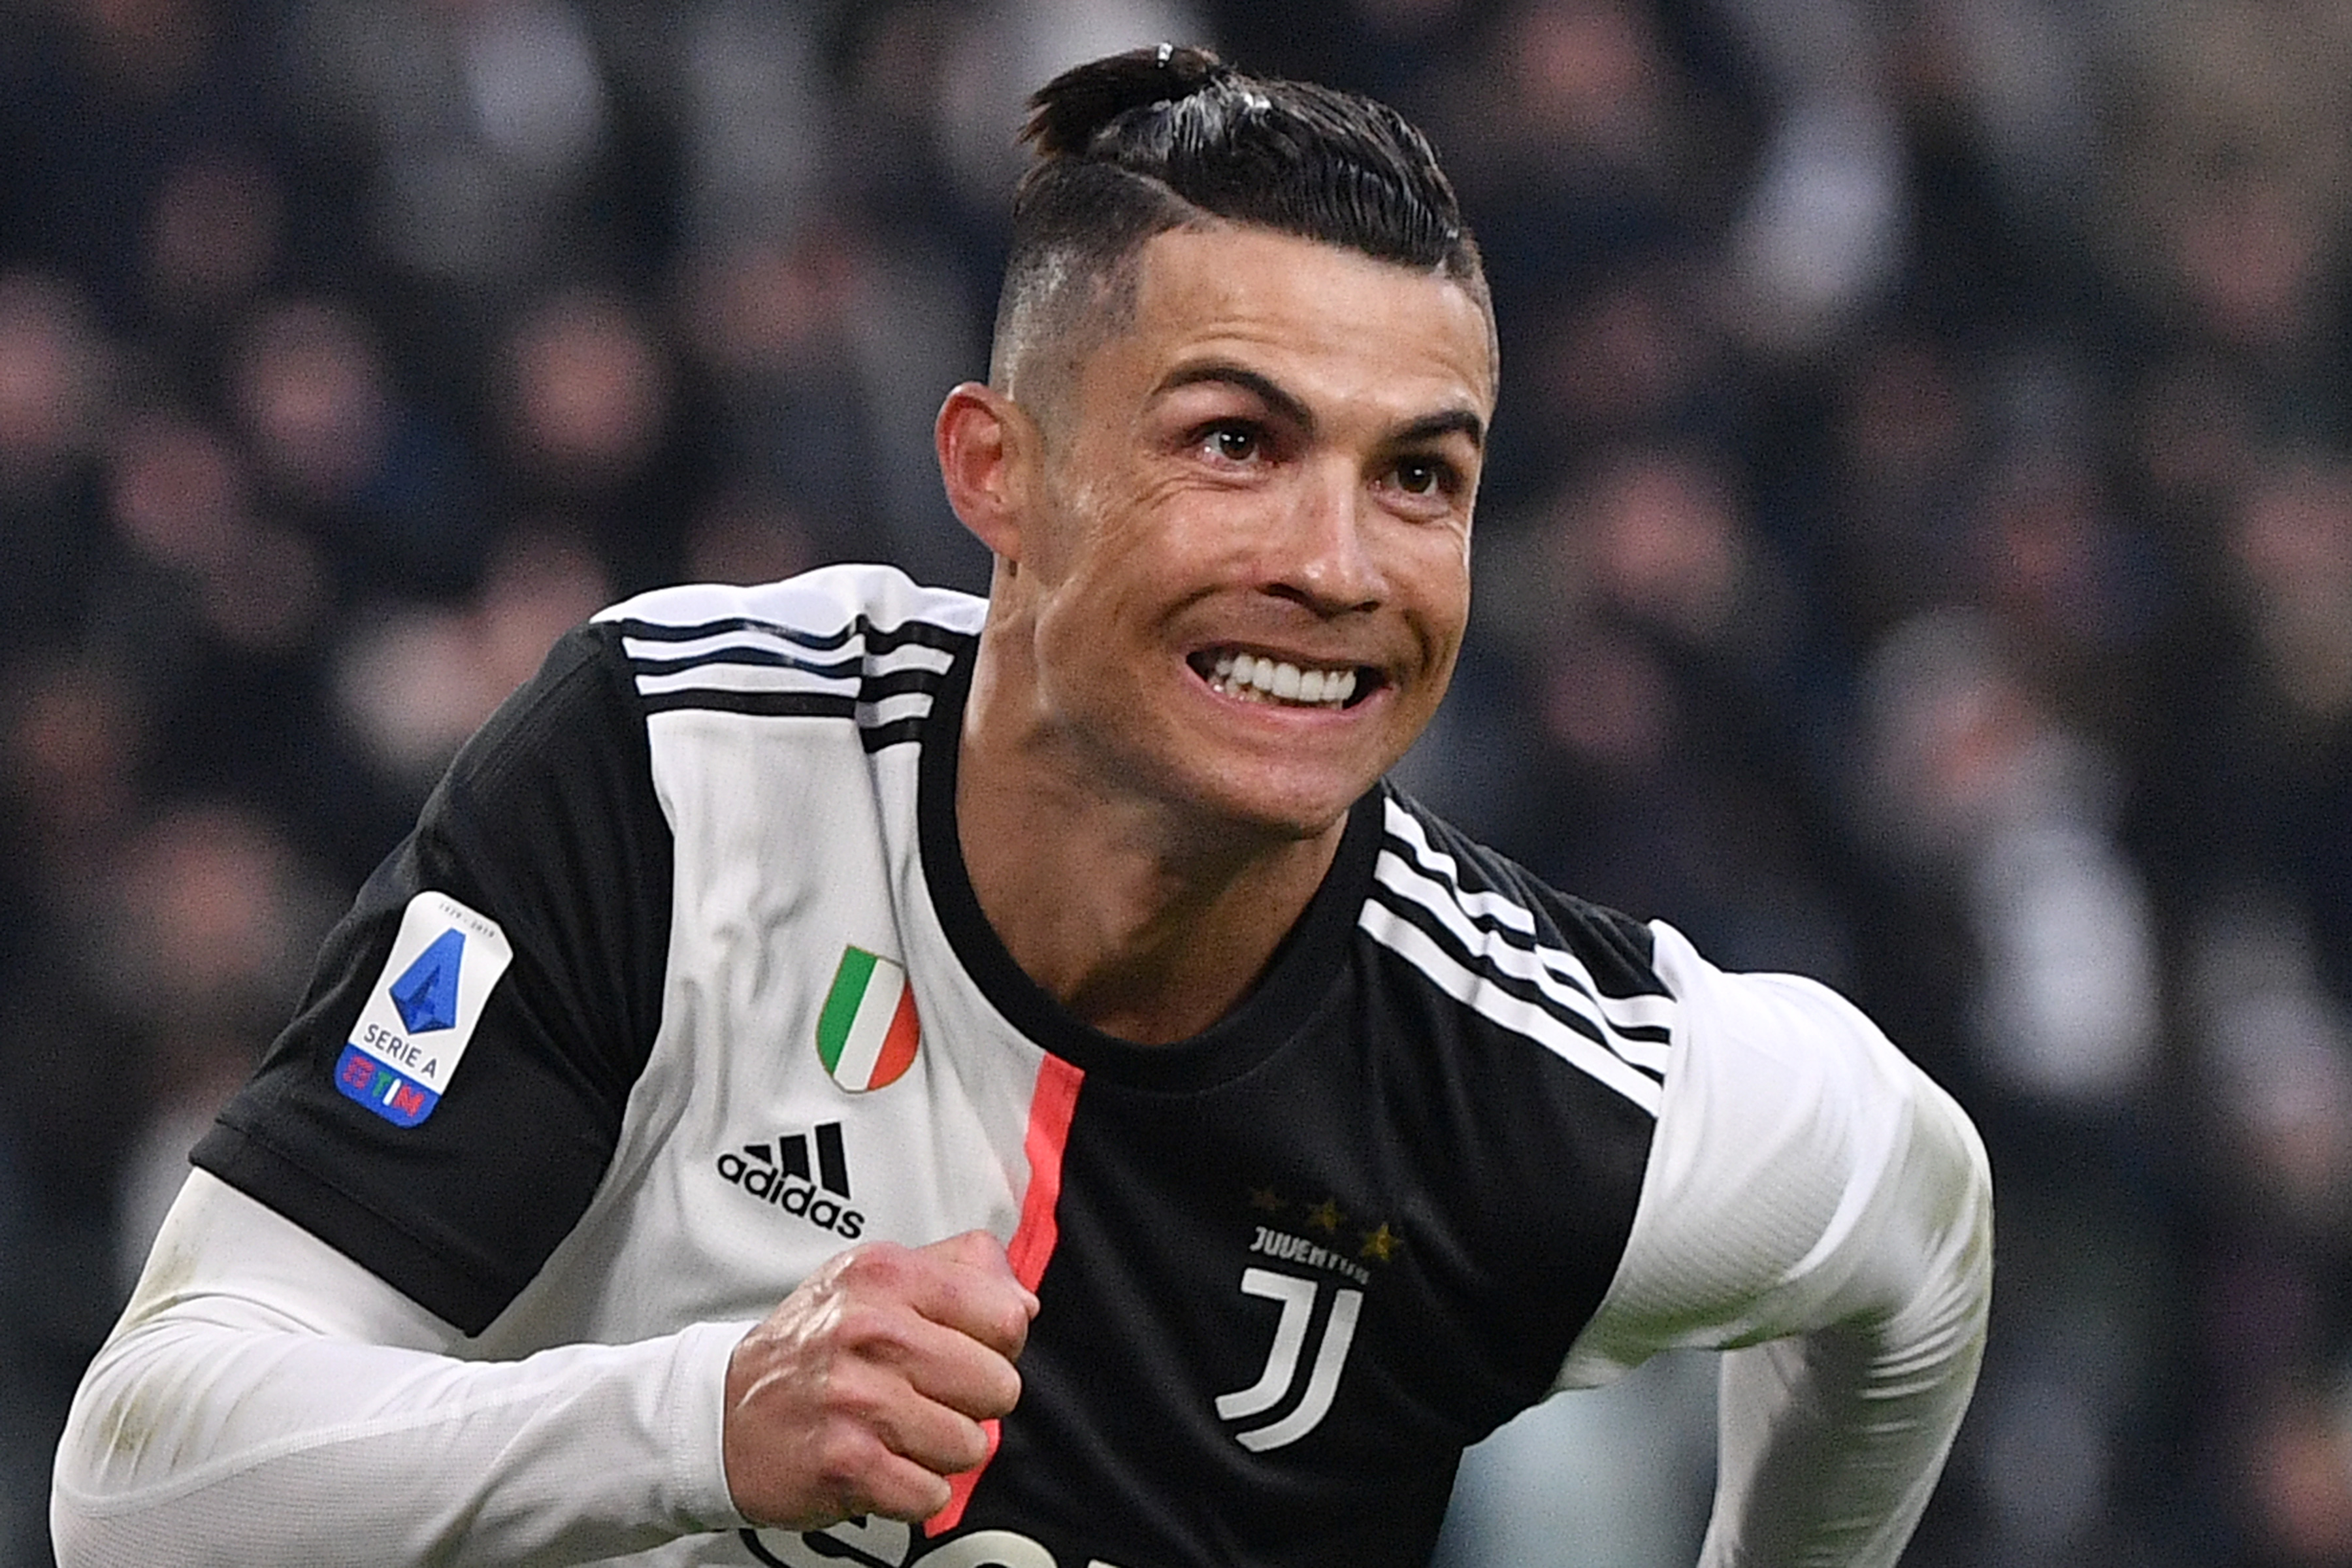 “Les hablo hoy no como jugador de fútbol”: Cristiano Ronaldo sobre el coronavirus (COMUNICADO)